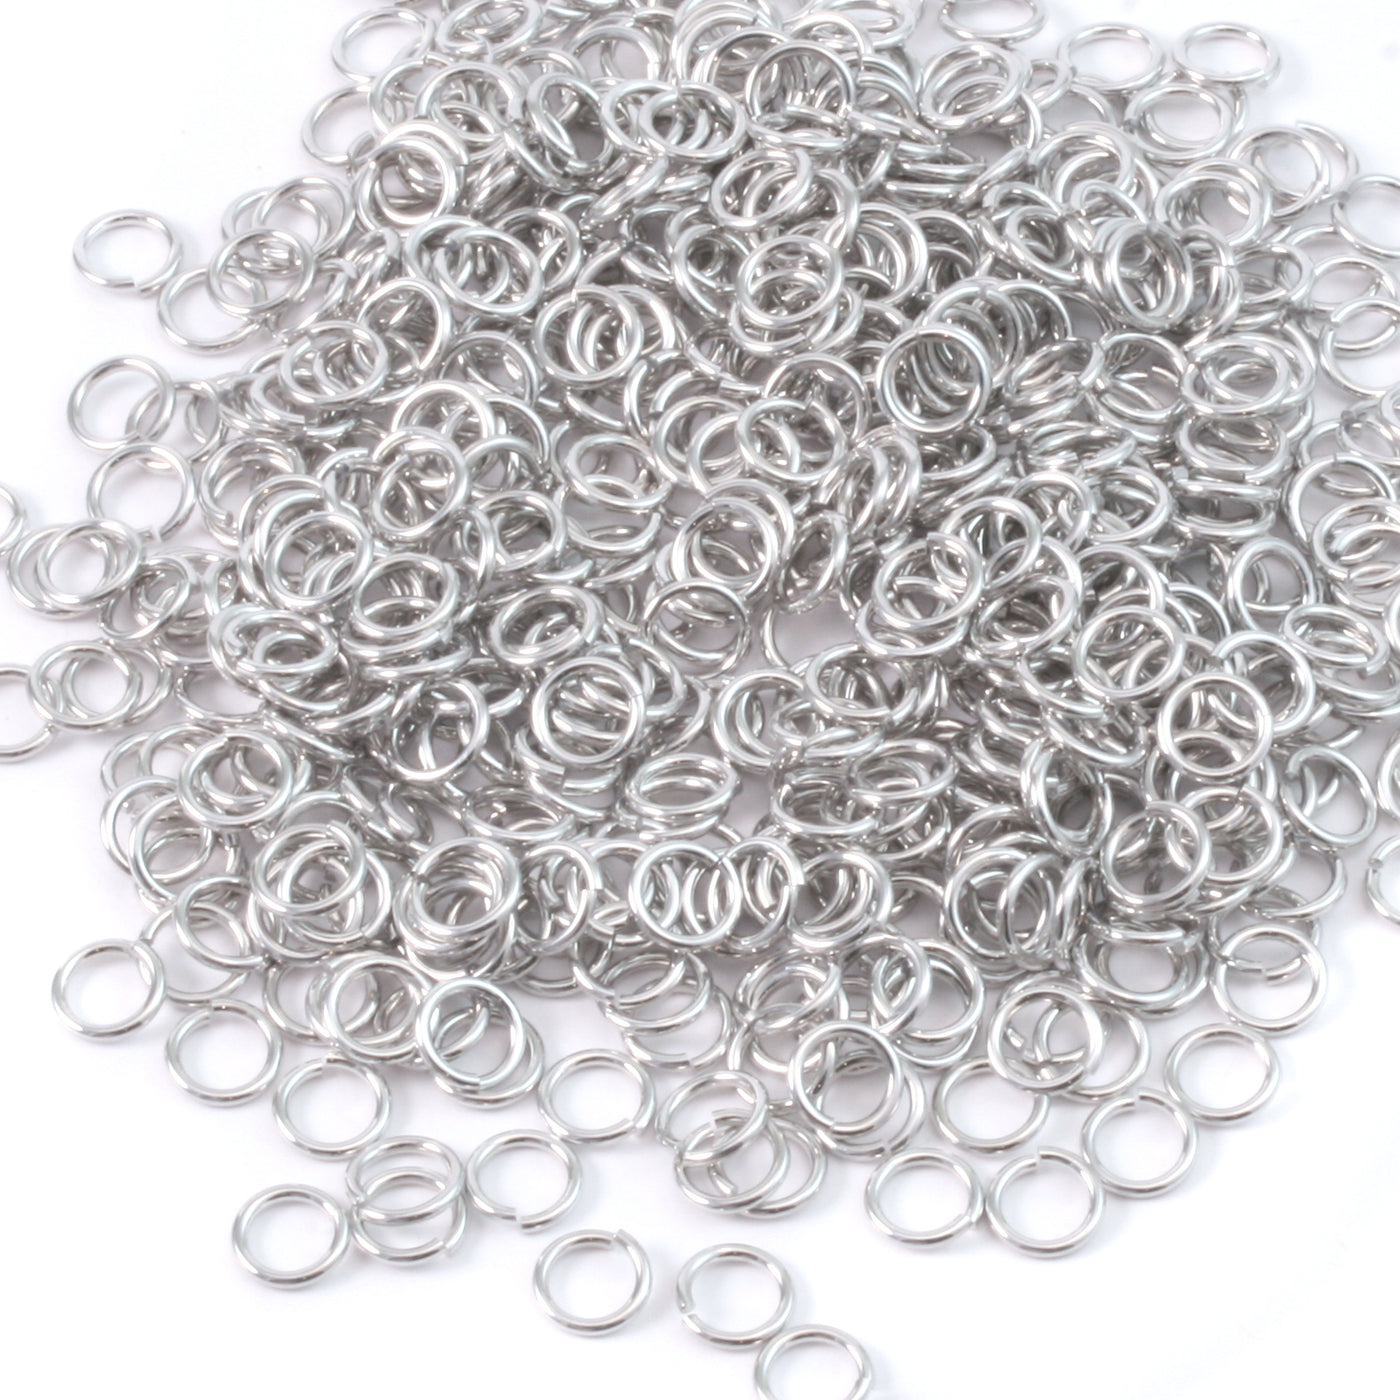 Aluminum 3mm I.D. 18 Gauge Jump Rings, 1 oz (~600 rings) – Beaducation